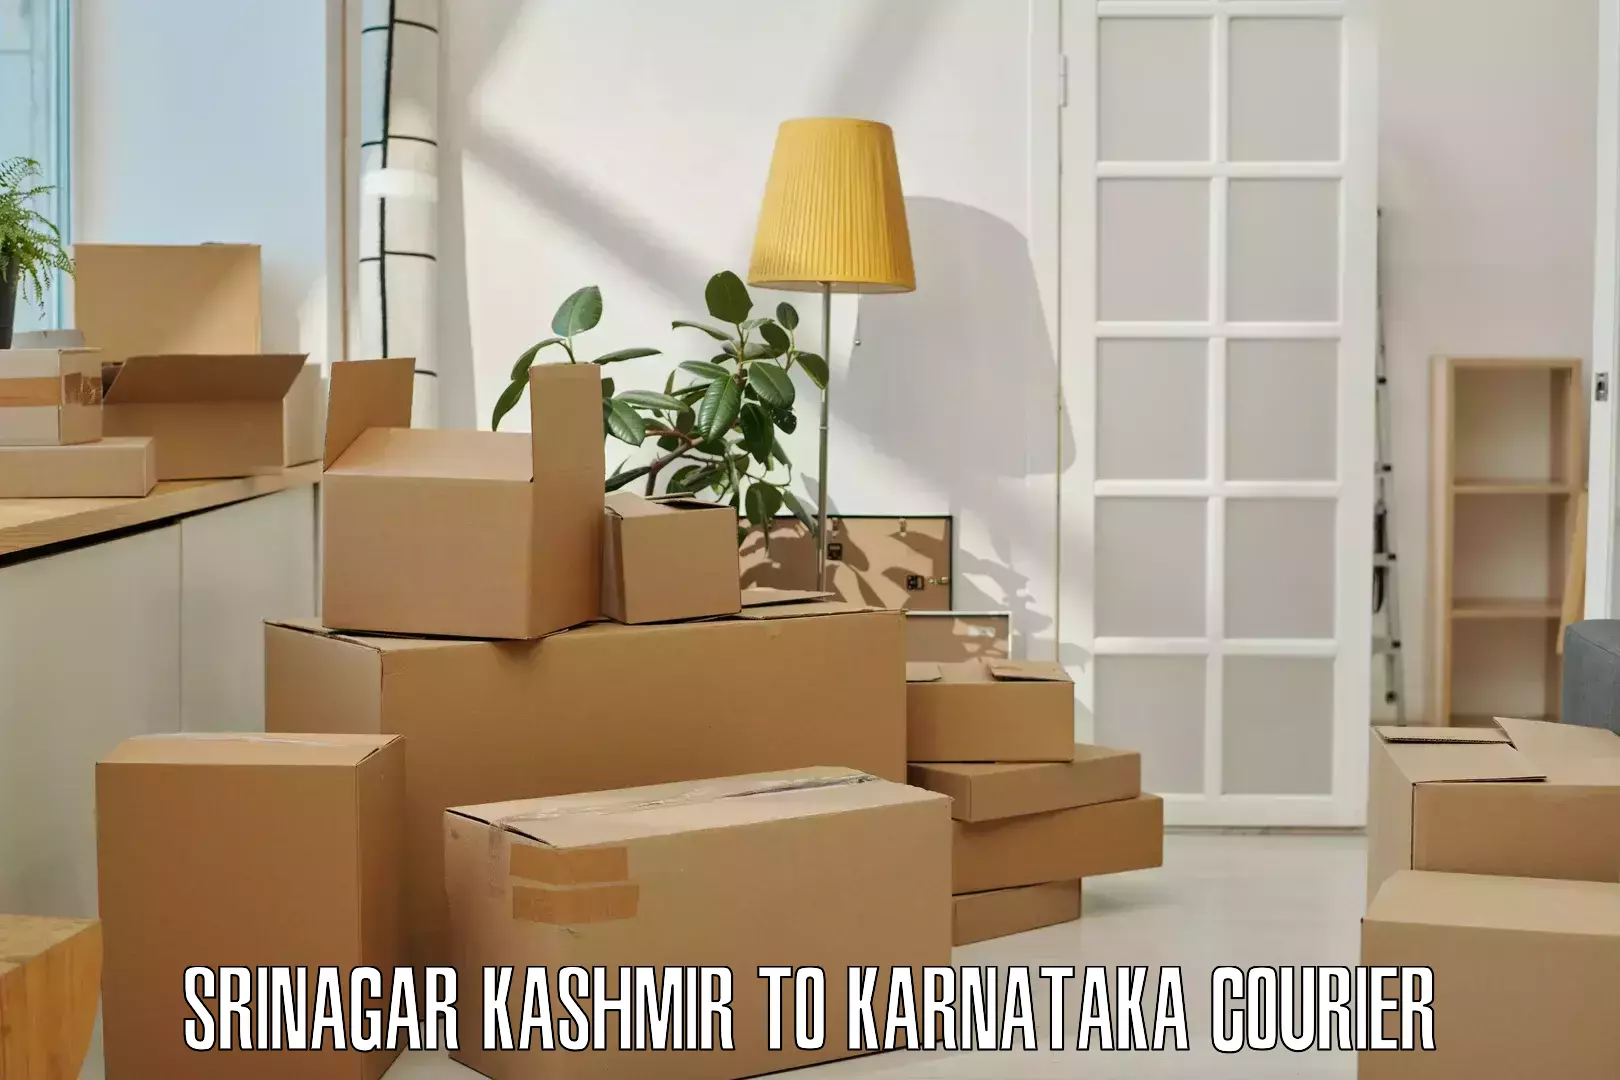 Multi-national courier services Srinagar Kashmir to Khanapur Karnataka